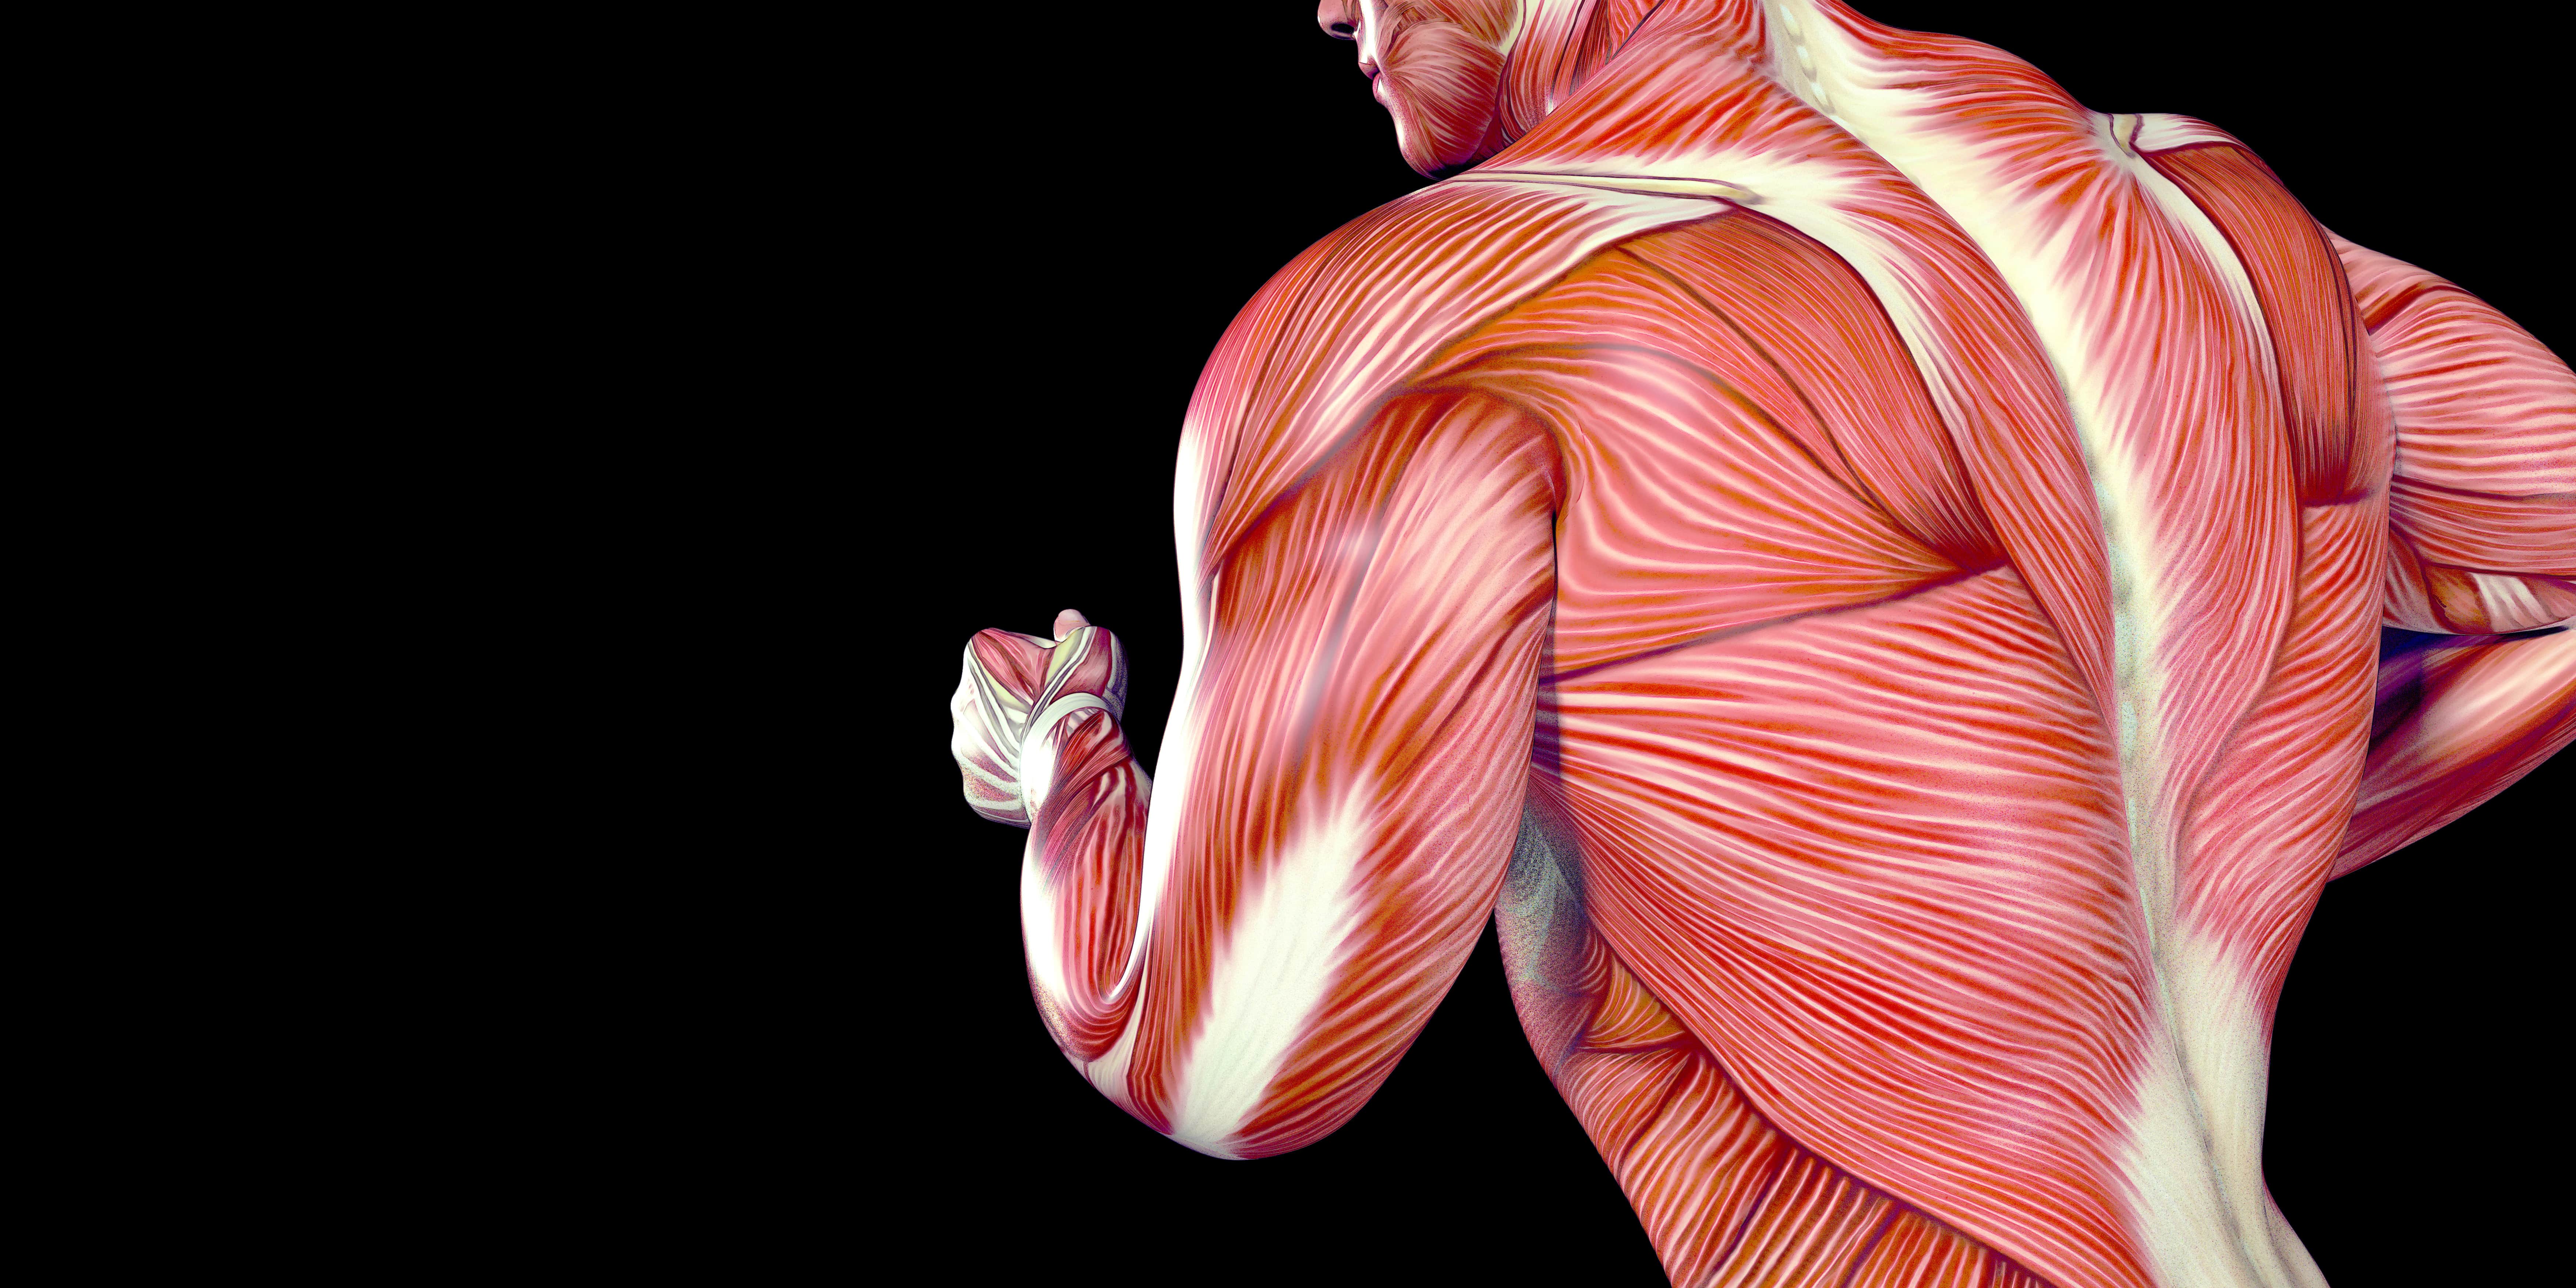 Le muscle grand rond est un adducteur situé au niveau du bord latéral de l'omoplate © madesapix, Adobe Stock